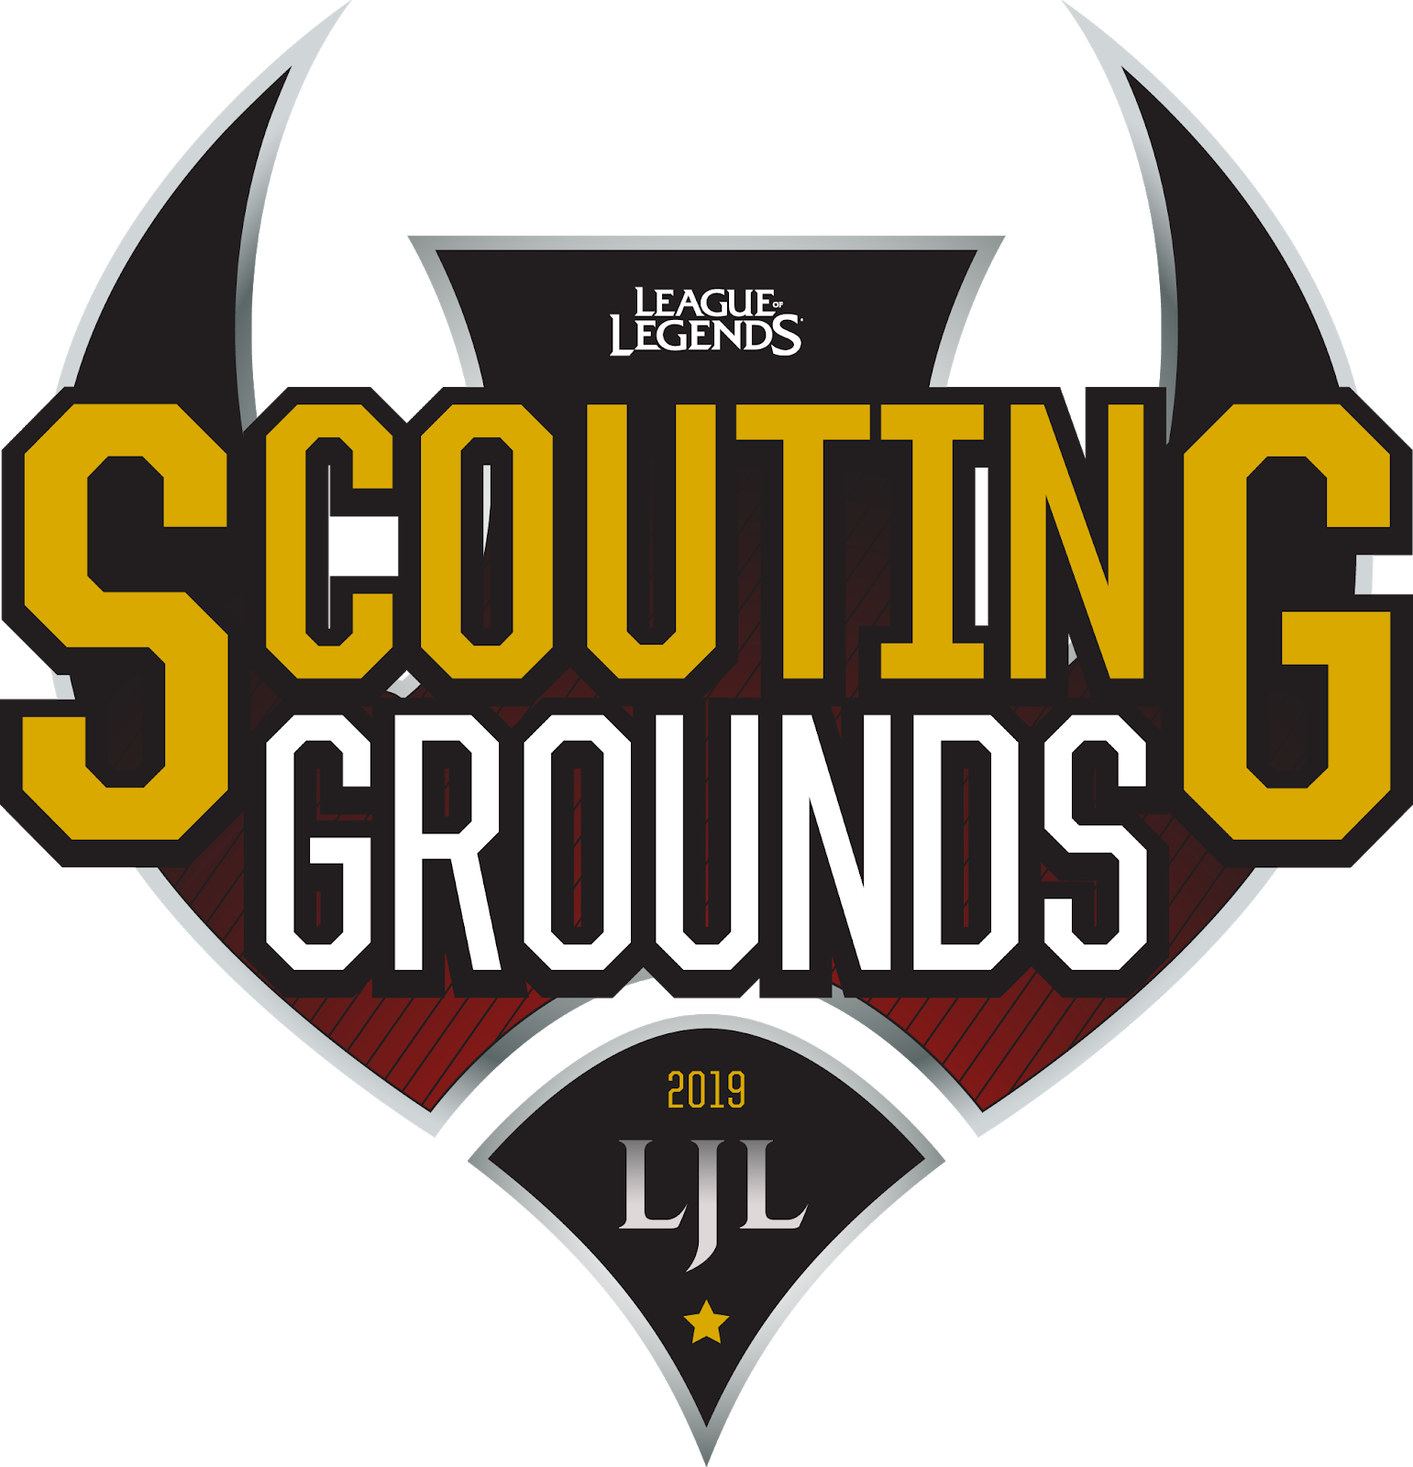 リーグ オブ レジェンド 国内プロリーグ Ljl への登竜門 Ljl 19 スカウティング グラウンズ 開催 実践形式のパフォーマンスをプロチームがスカウト 合同会社ライアットゲームズのプレスリリース